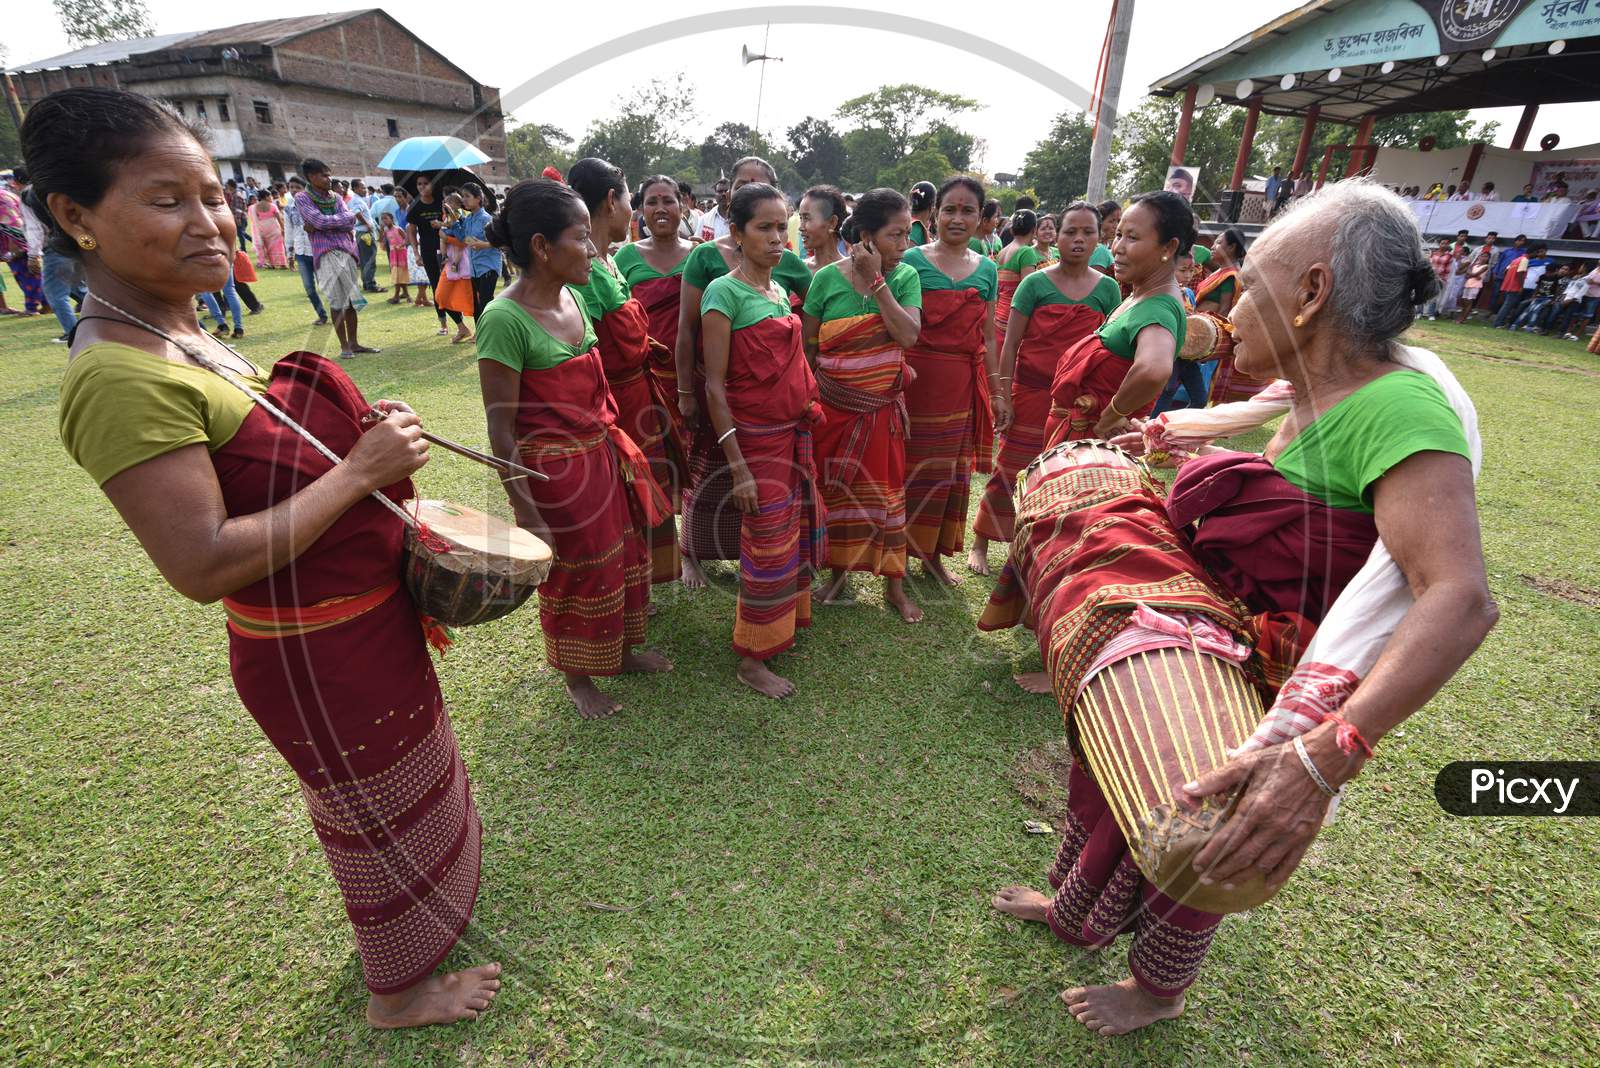 Assam Tribal People Celebrating Suwori Festival With Bihu Dance in Boko, Assam